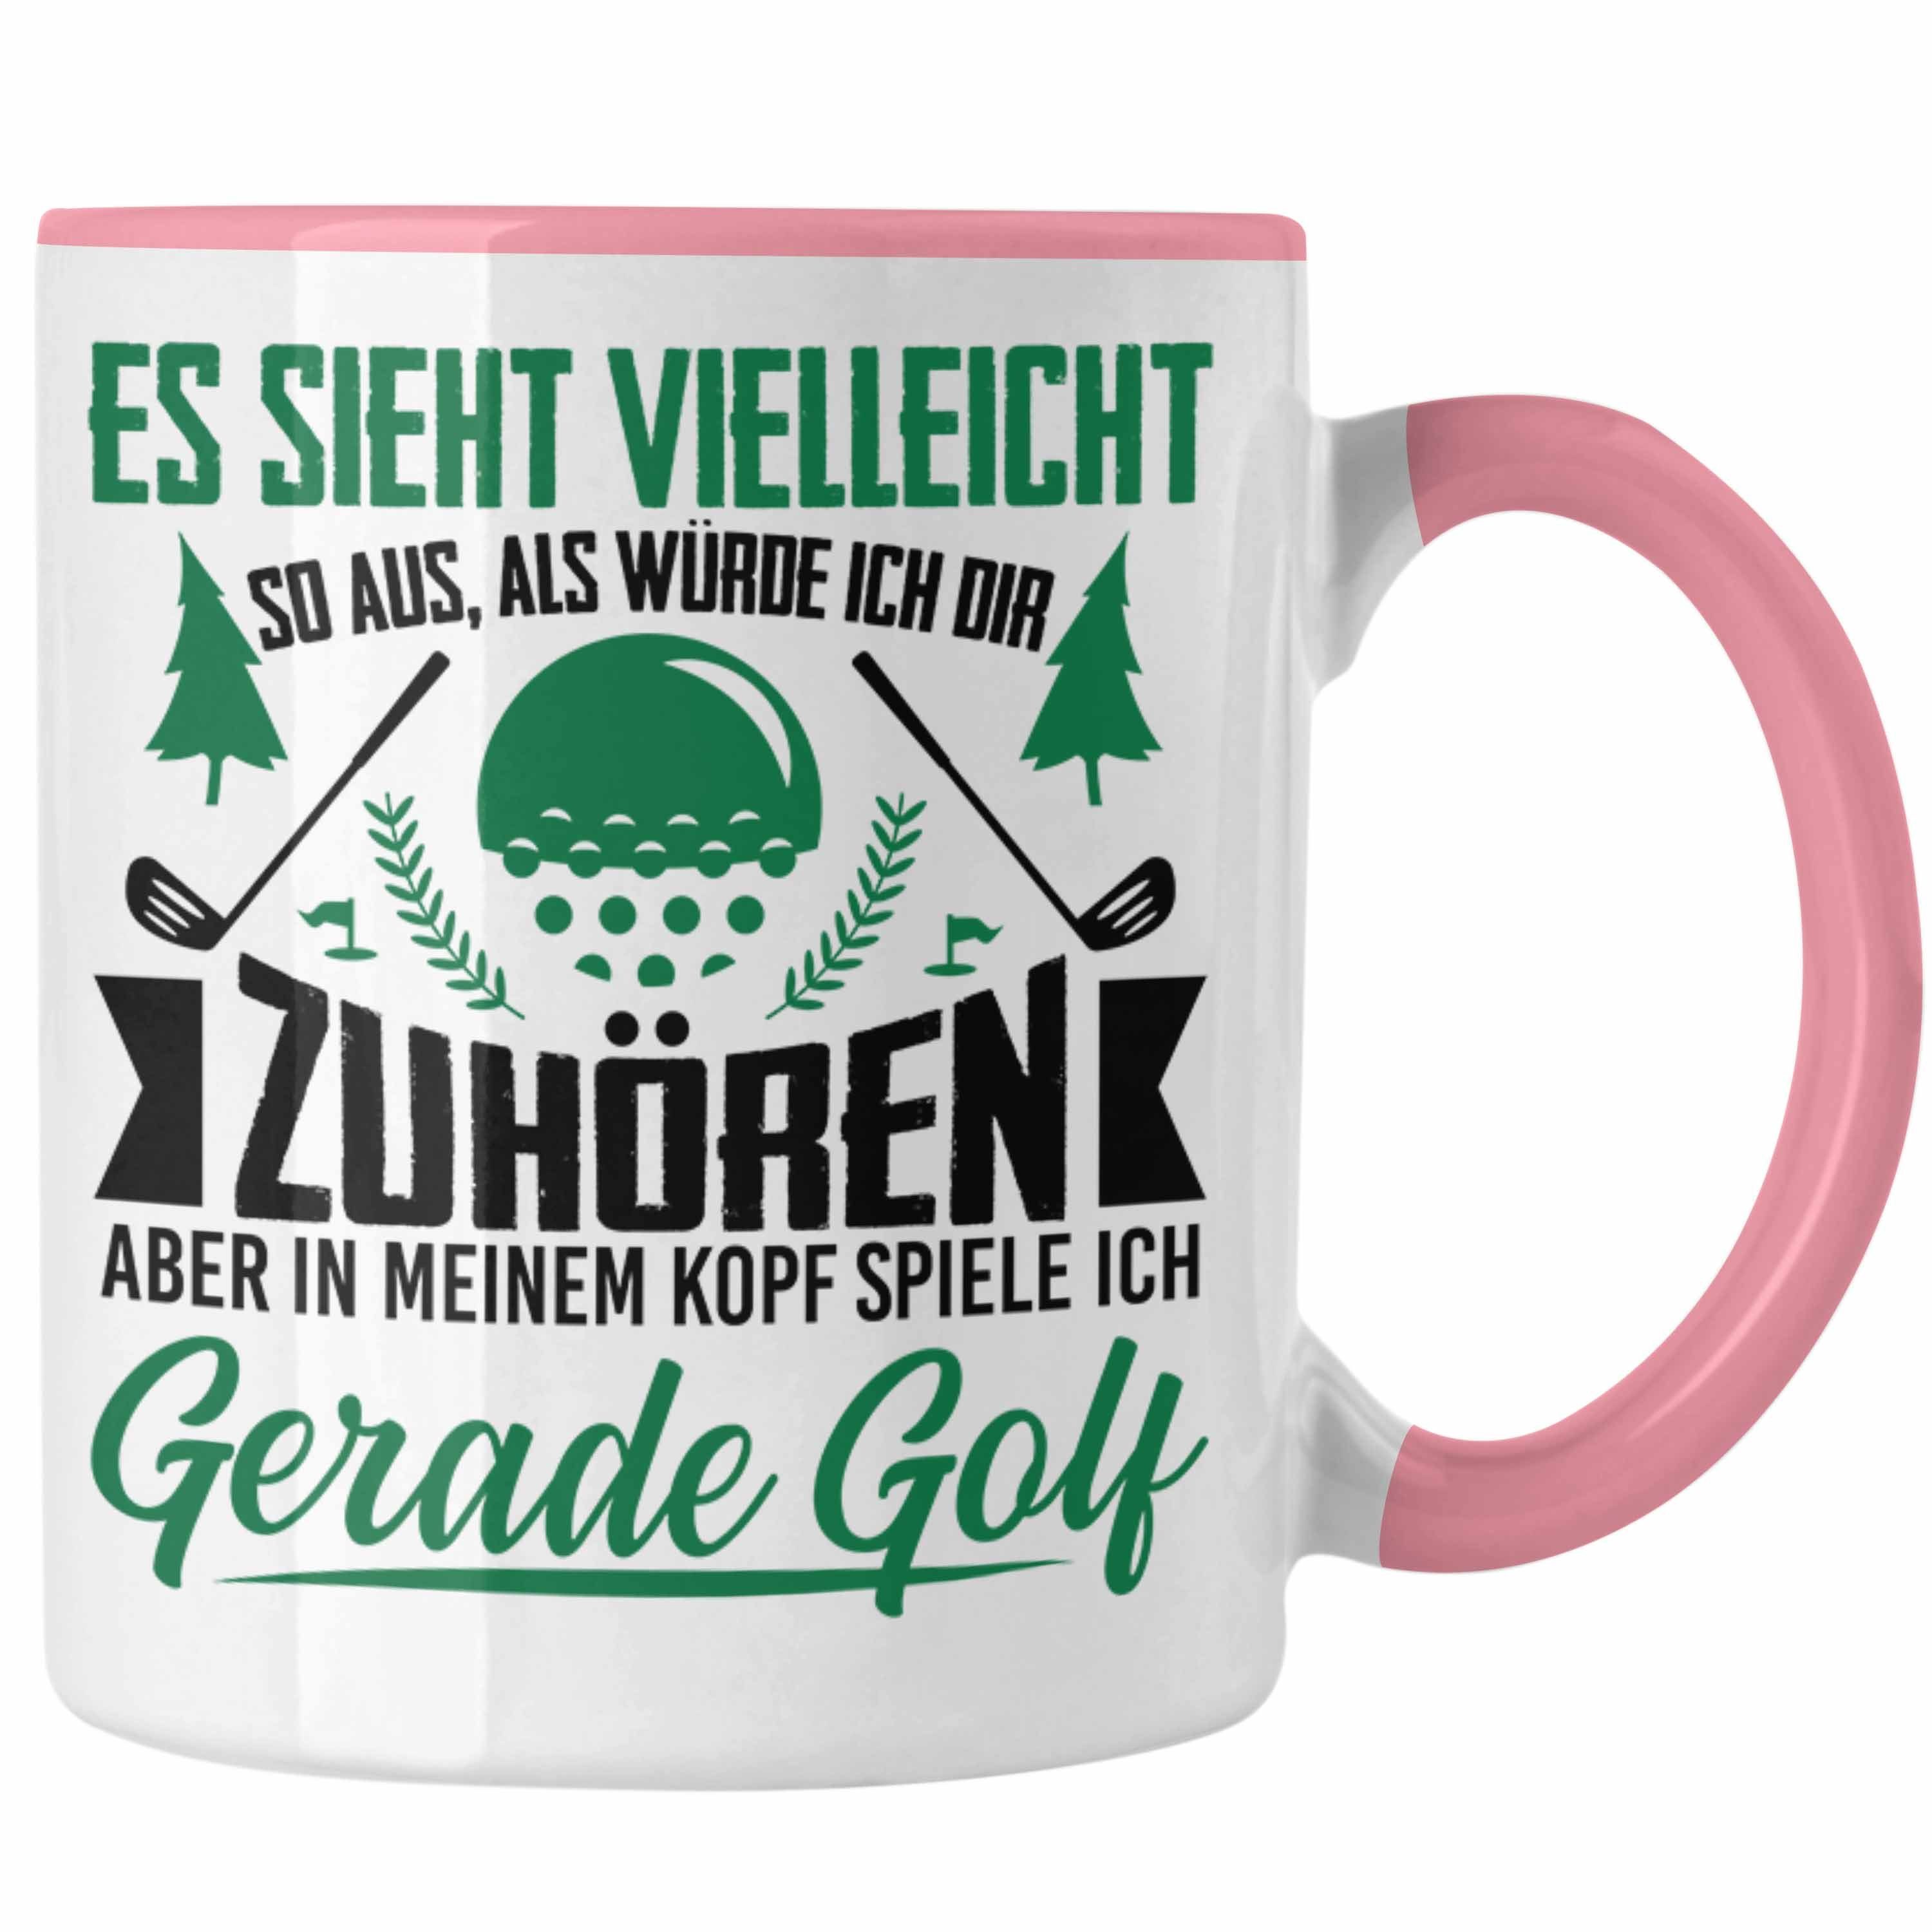 Trendation Tasse Trendation - Golfer Geschenk Golf Tasse mit Spruch - Kaffeetasse für Golfer Geschenkidee Rosa